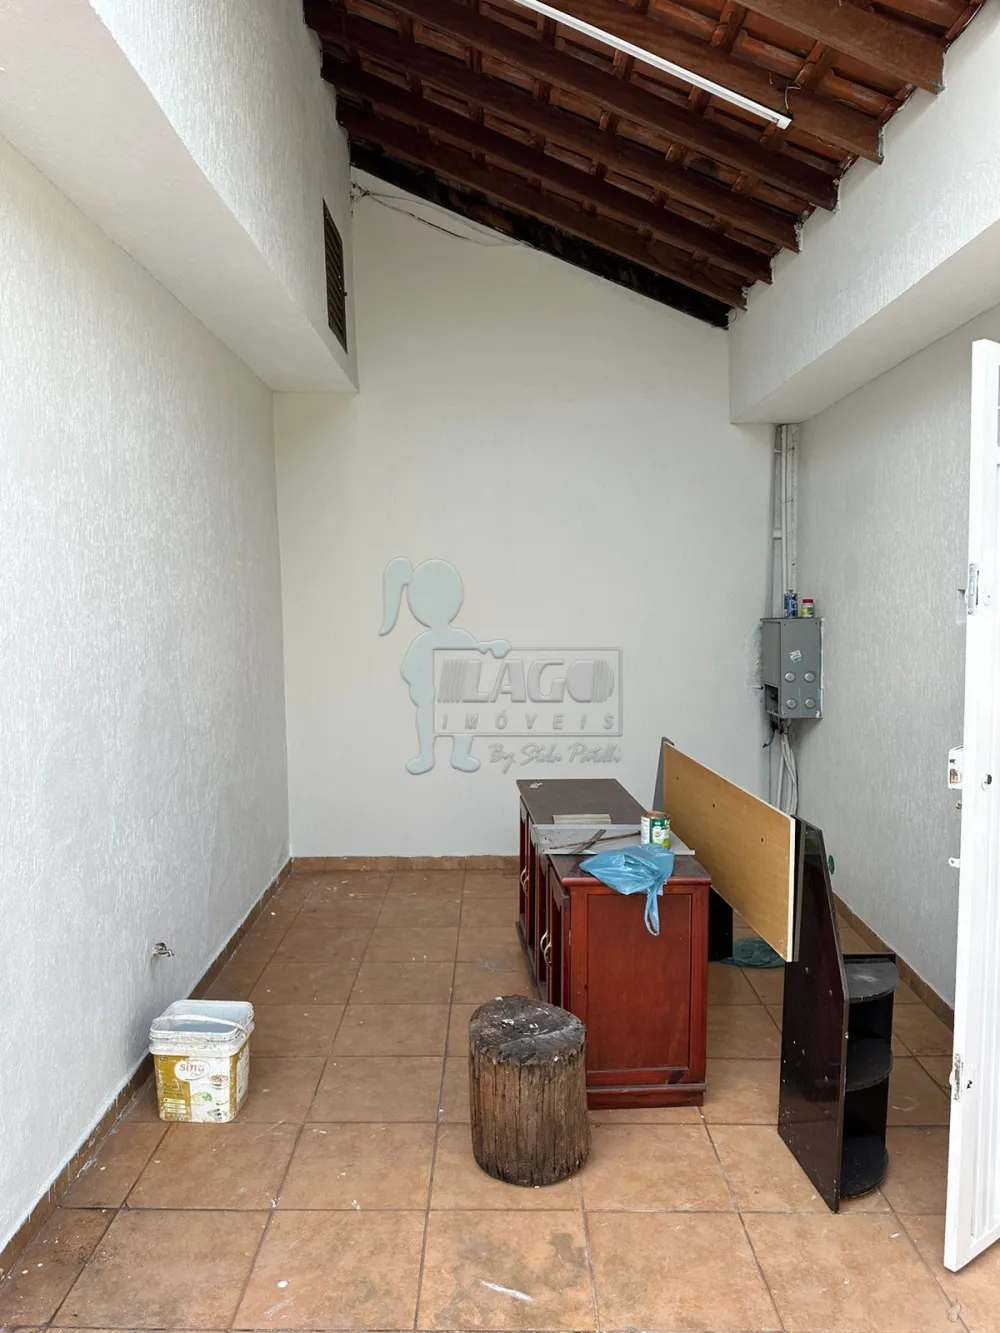 Comprar Casa / Padrão em Ribeirão Preto R$ 266.000,00 - Foto 2